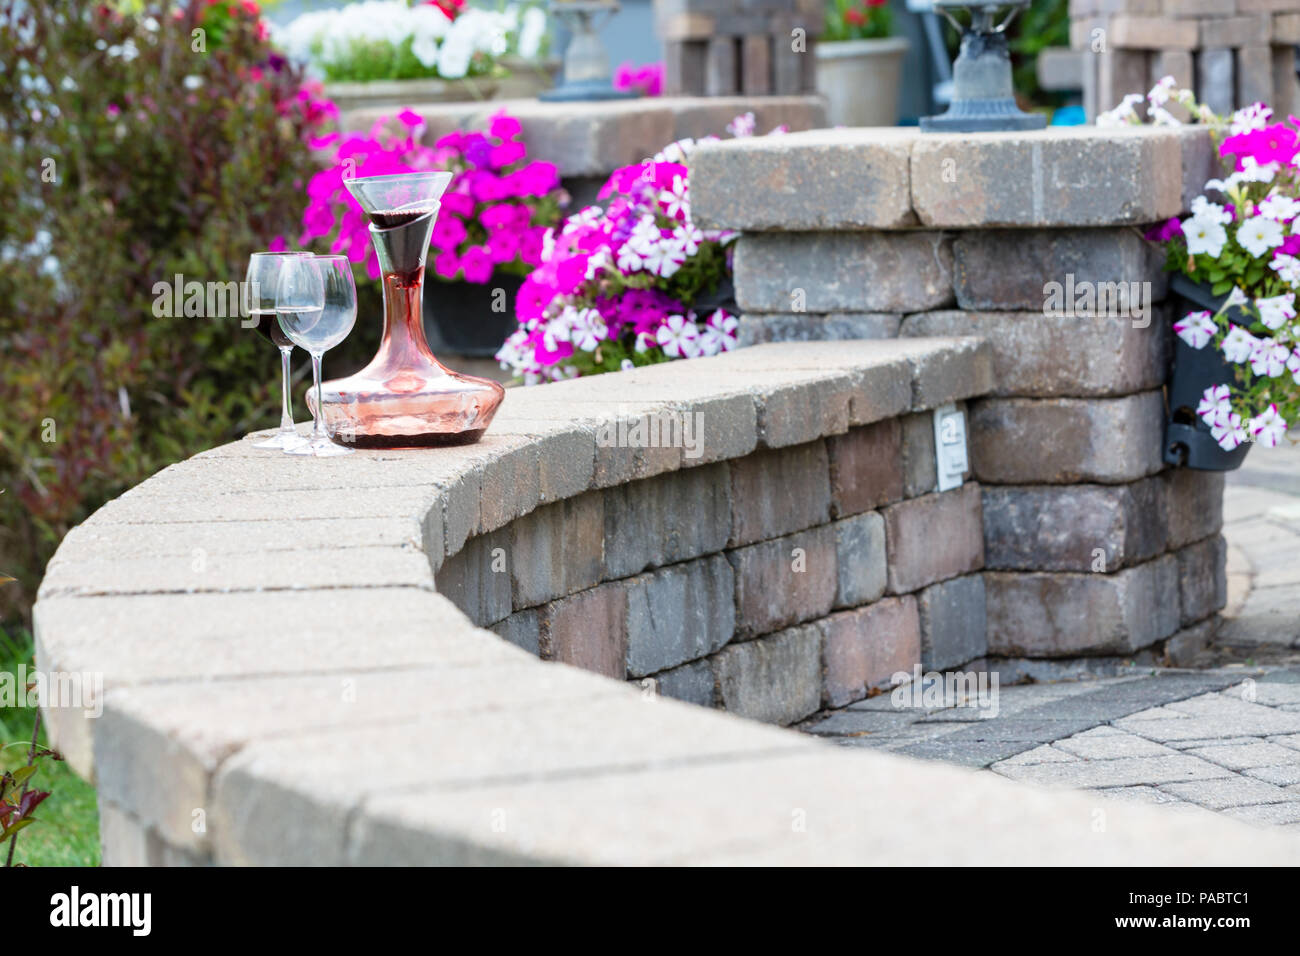 Dekanter Rotwein mit Kohlensäure auf einer gekrümmten Ziegelstein-patio  Wand mit zwei weingläser vor bunten Kübelpflanzen Sommerblumen mit Kopie  Raum Stockfotografie - Alamy